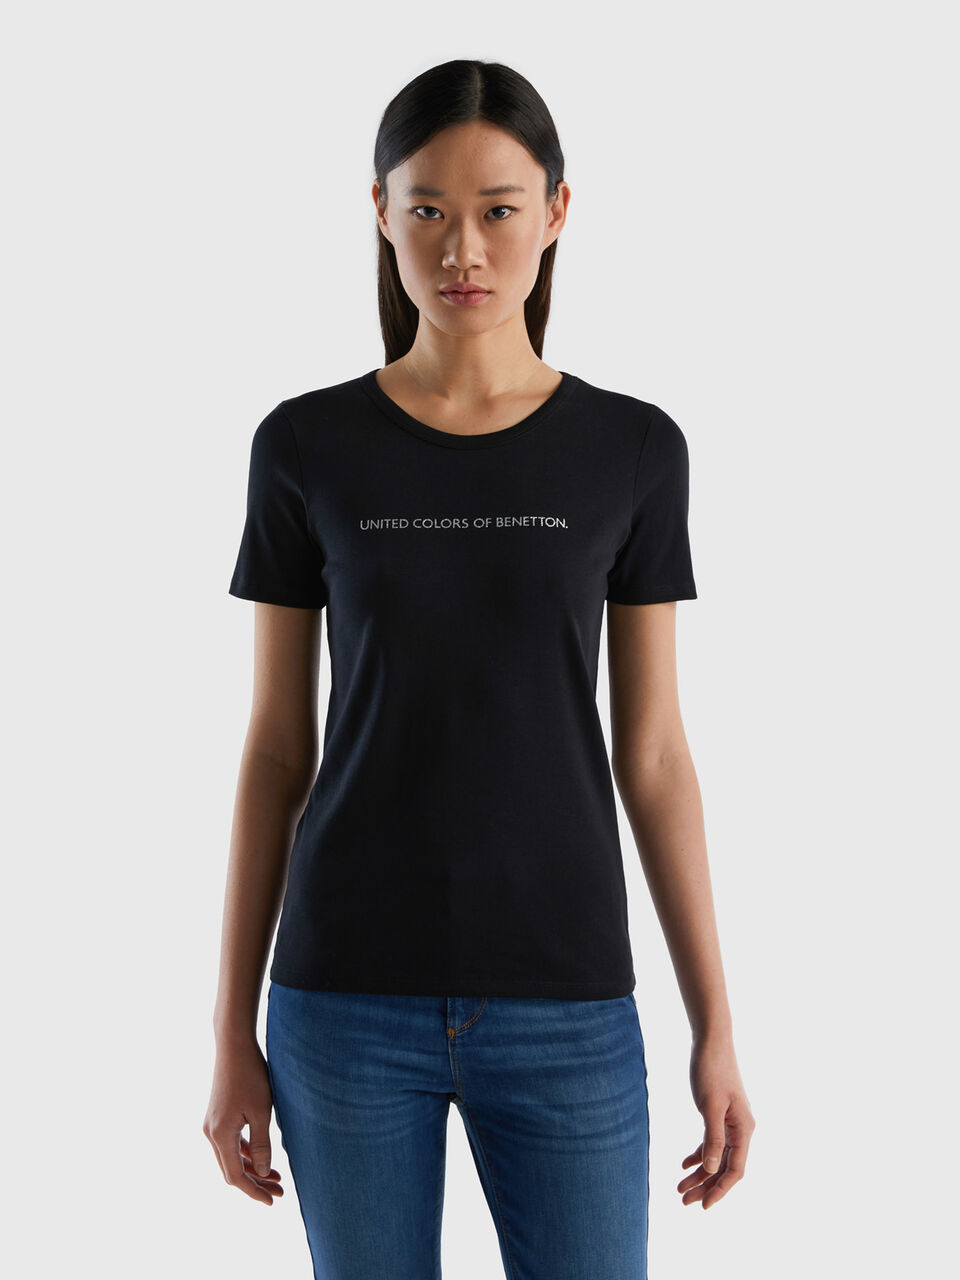 T-Shirt aus 100% - Baumwolle Logoprint glitzerndem Schwarz mit Benetton 